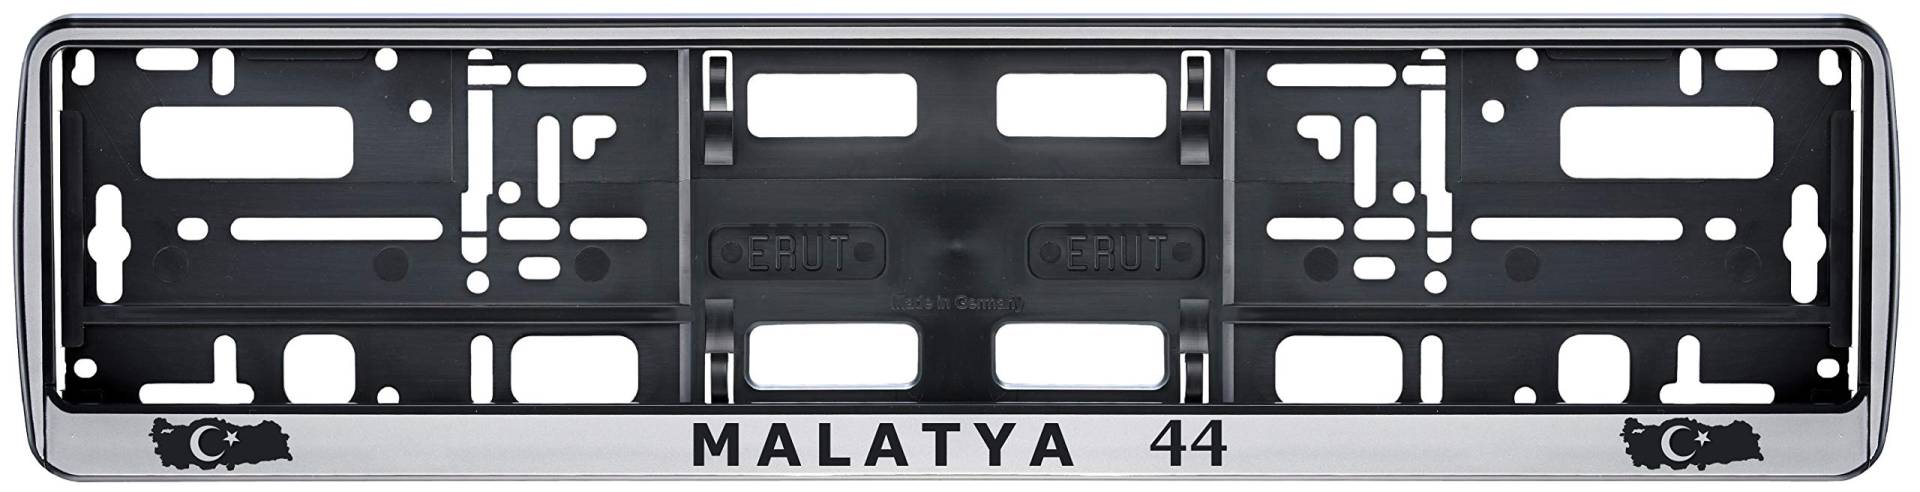 Auto Kennzeichenhalter in der Farbe Silber/Schwarz Nummernschildhalterung Auto, Nummernschildhalter Türkei Flagge 44 Malatya 2 Stück von aina